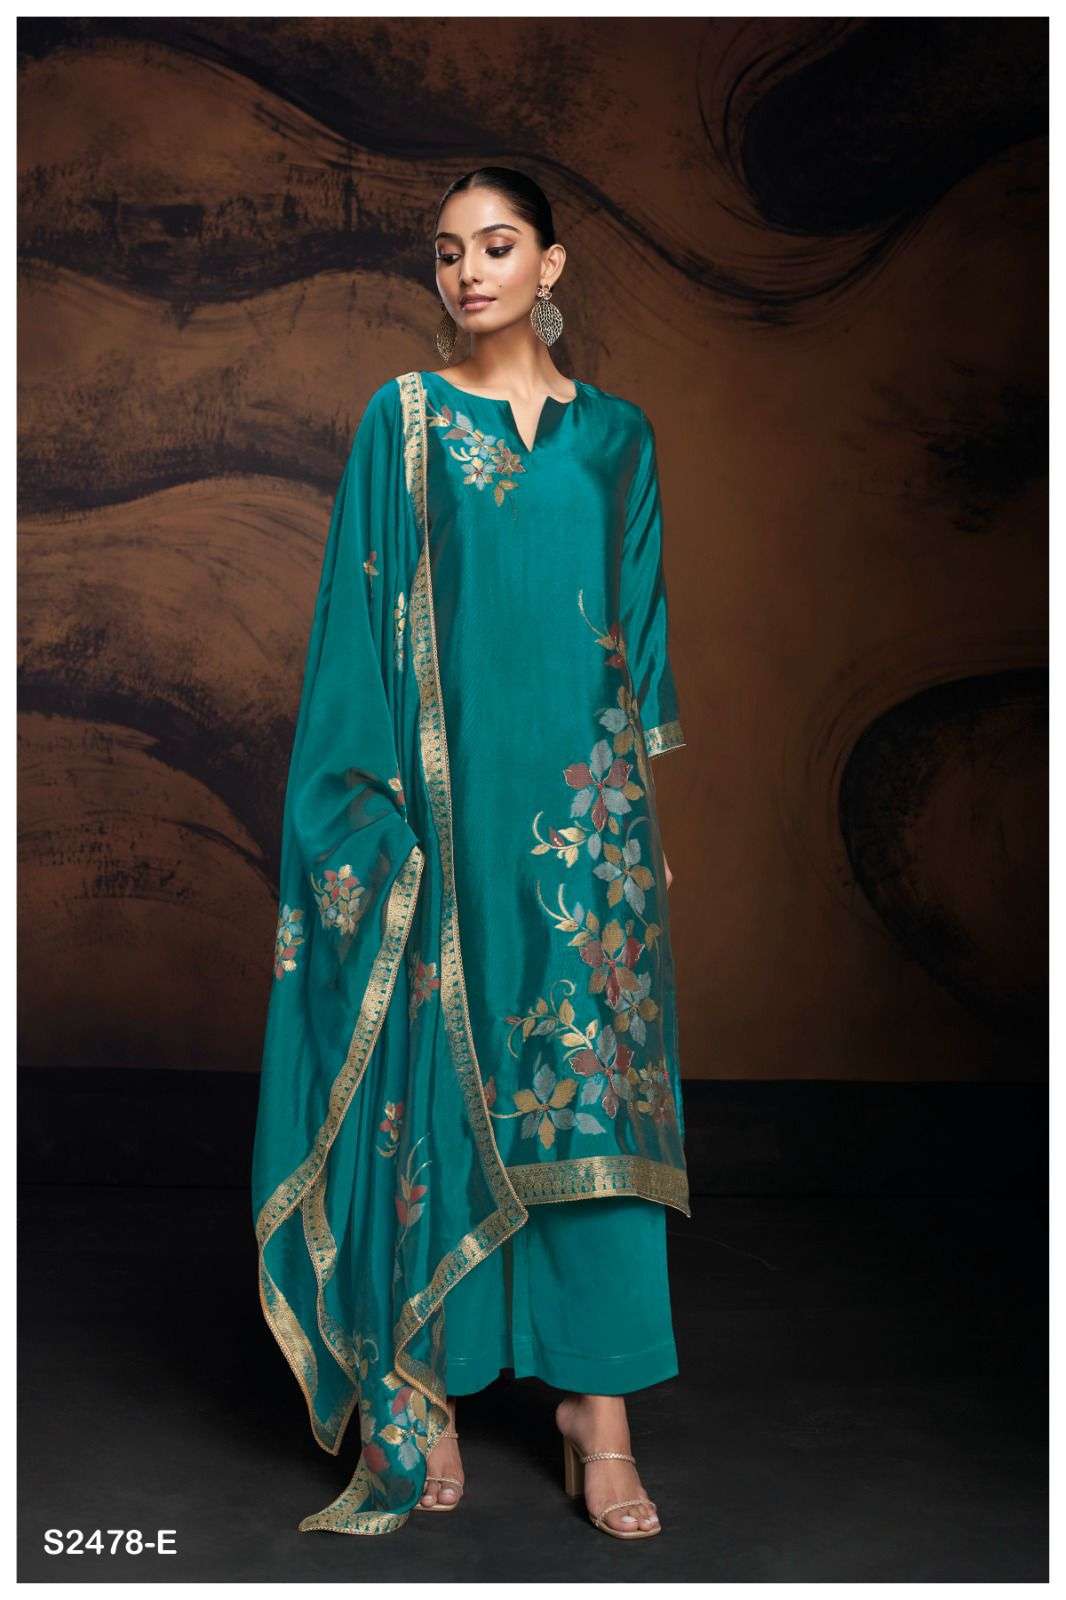 Ganga EVANIA 2478 Dress Materials Wholesale catalog